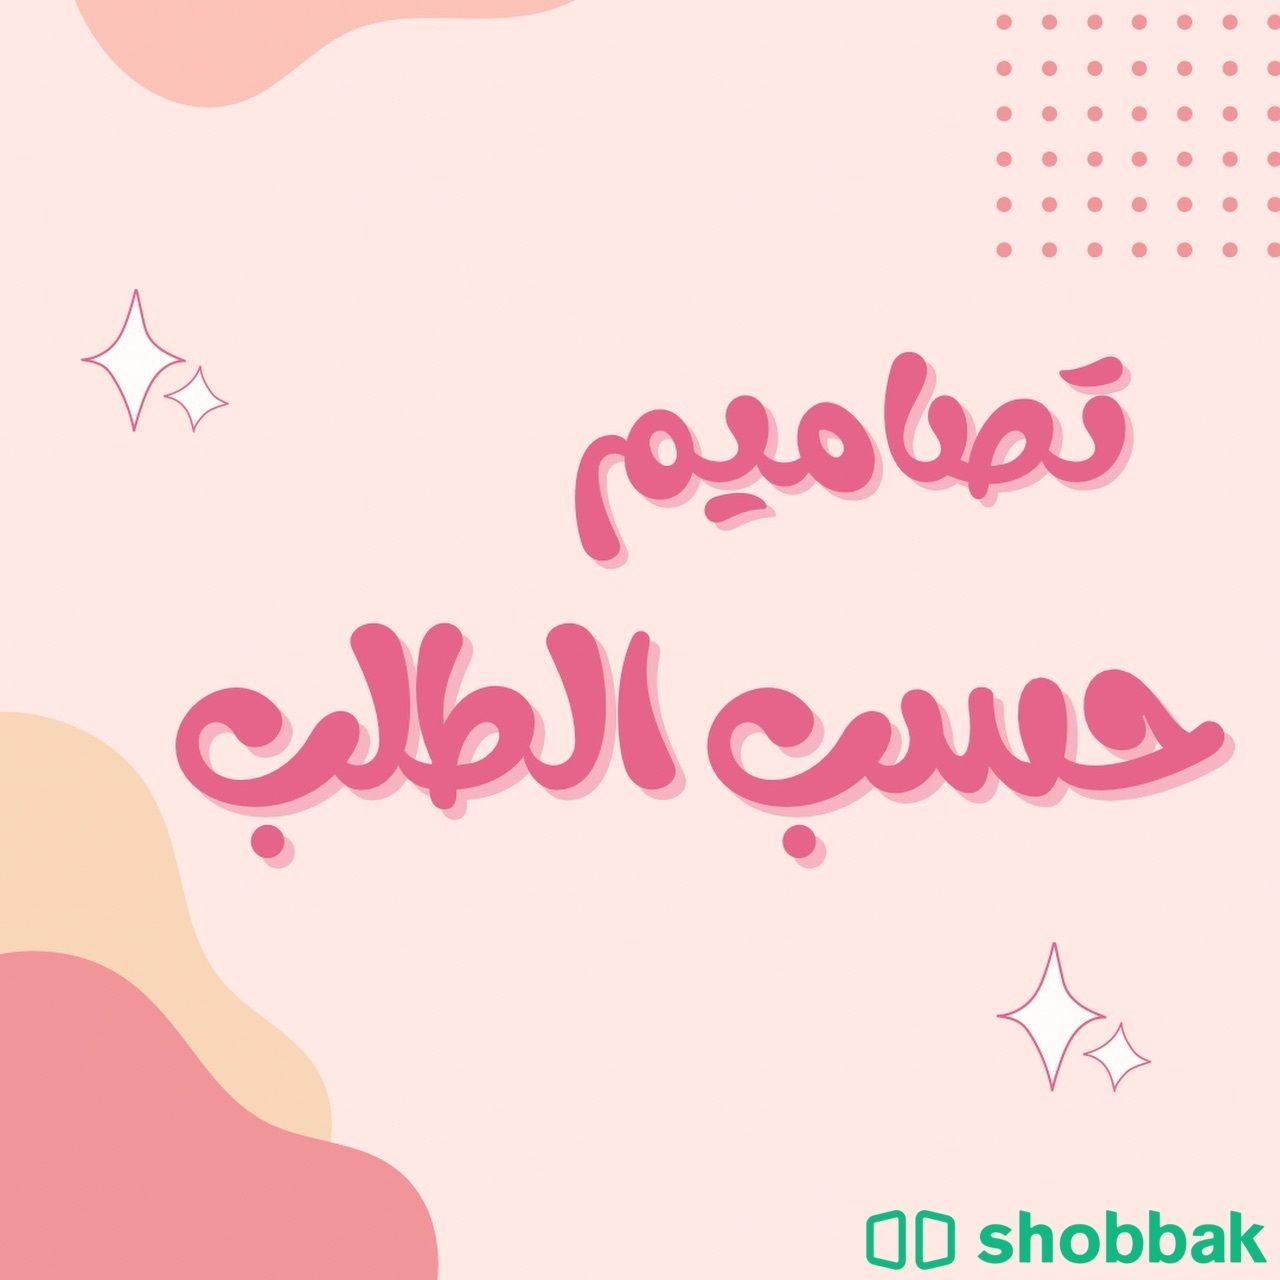 تصاميم و دعوات Shobbak Saudi Arabia